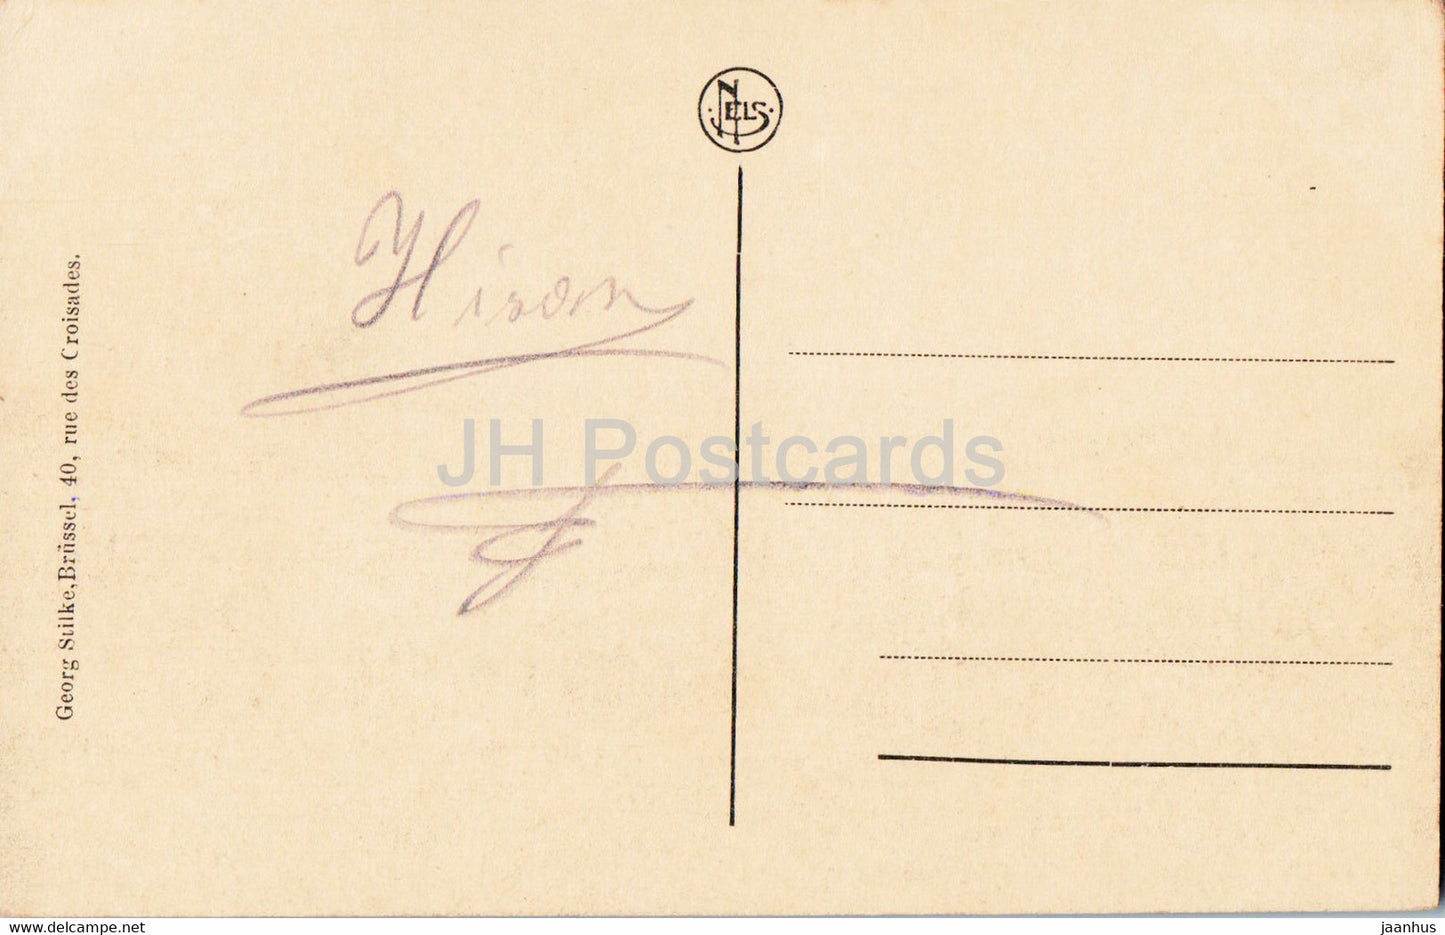 Hirson - Gesamtansicht - Gesamtansicht - alte Postkarte - Frankreich - gebraucht